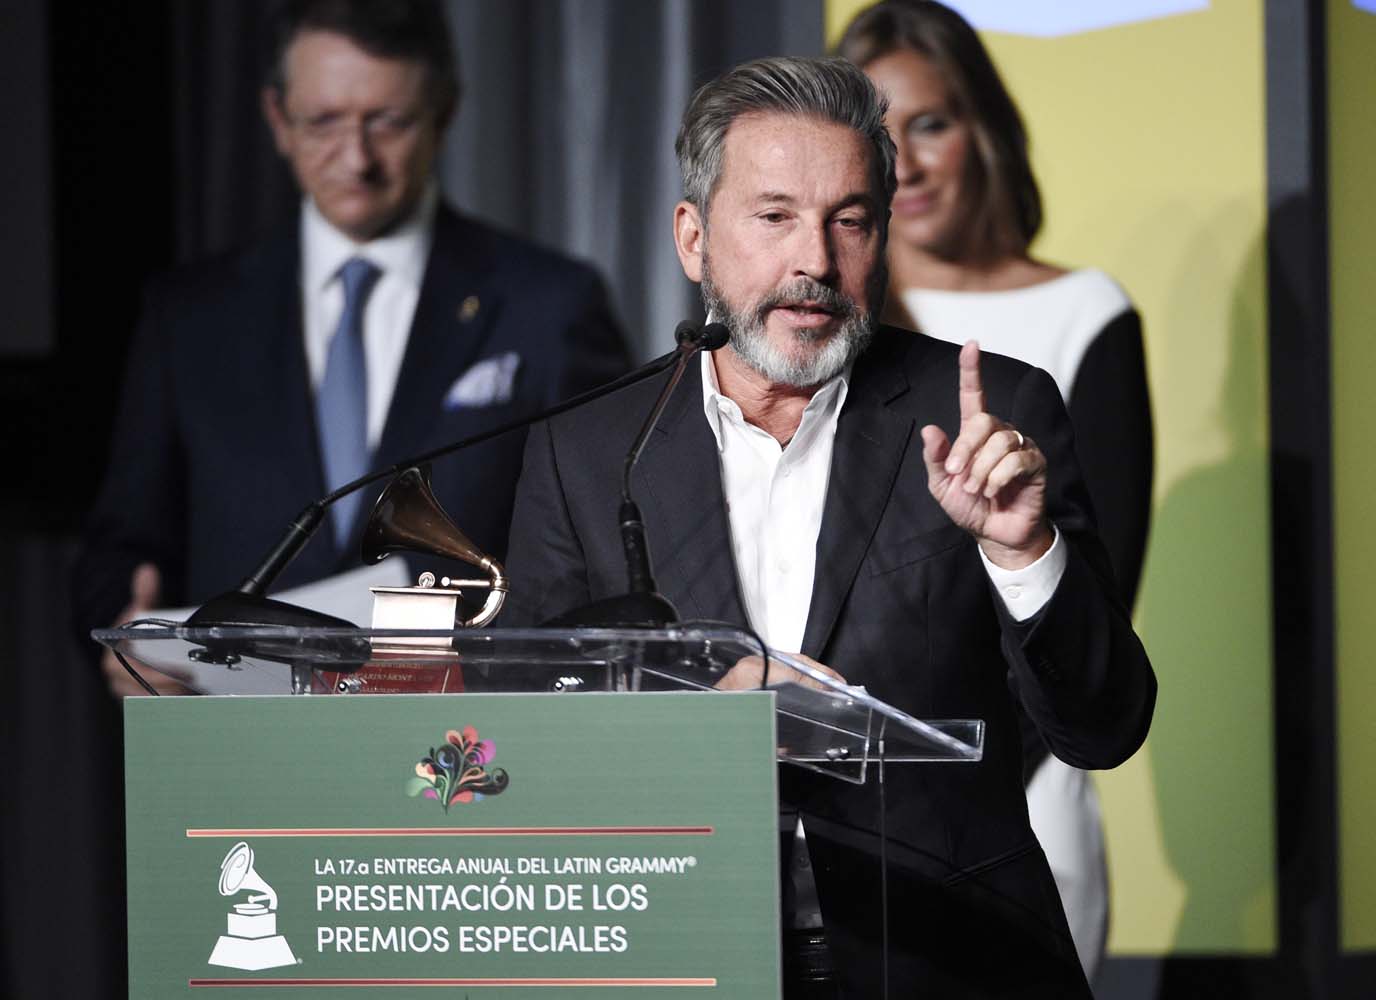 Montaner: Mientras yo recibo un Grammy, hay venezolanos escarbando en la basura para comer